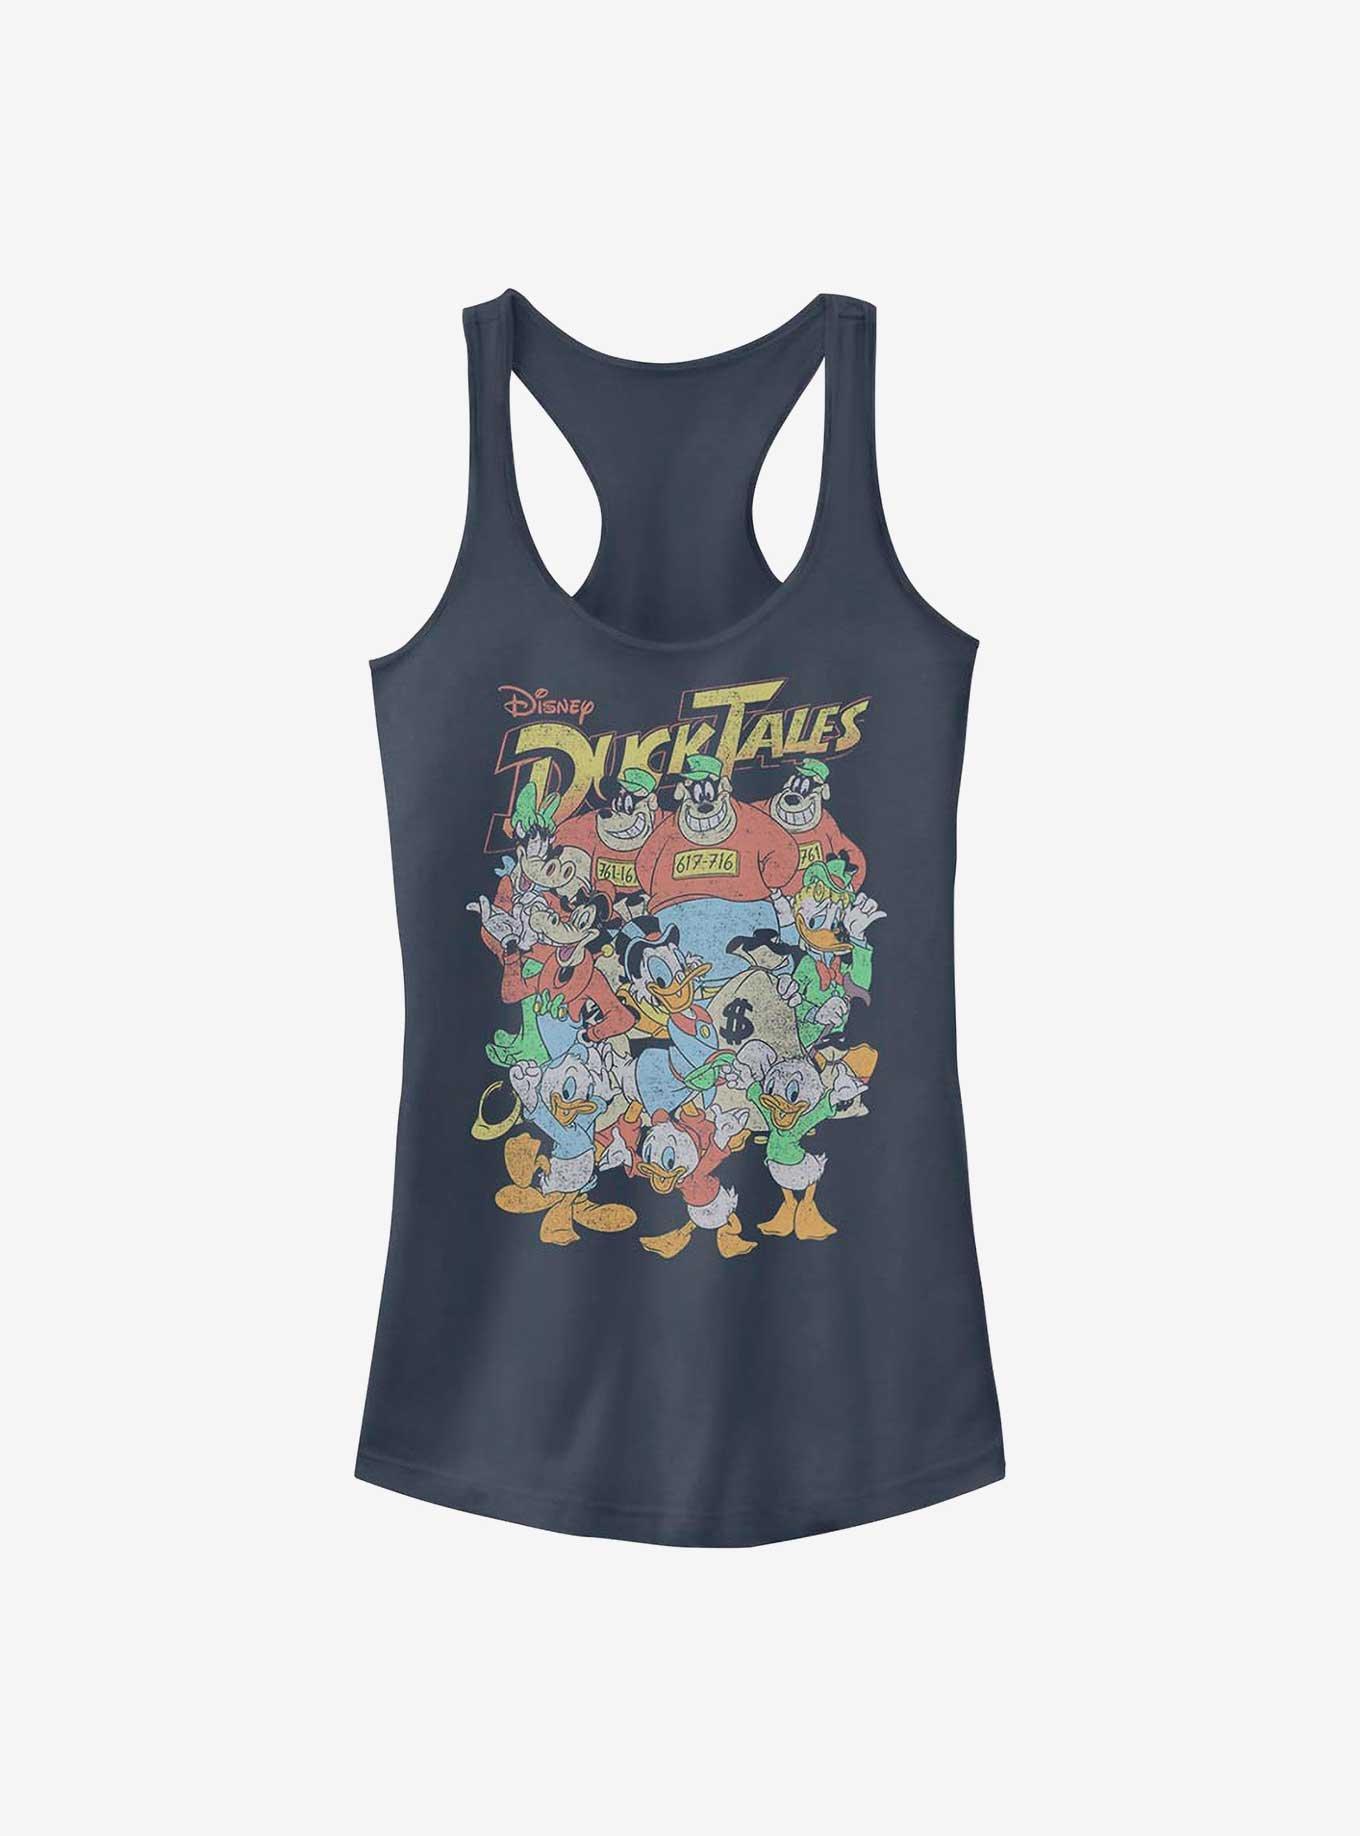 Disney Ducktales Crew Girls Tank